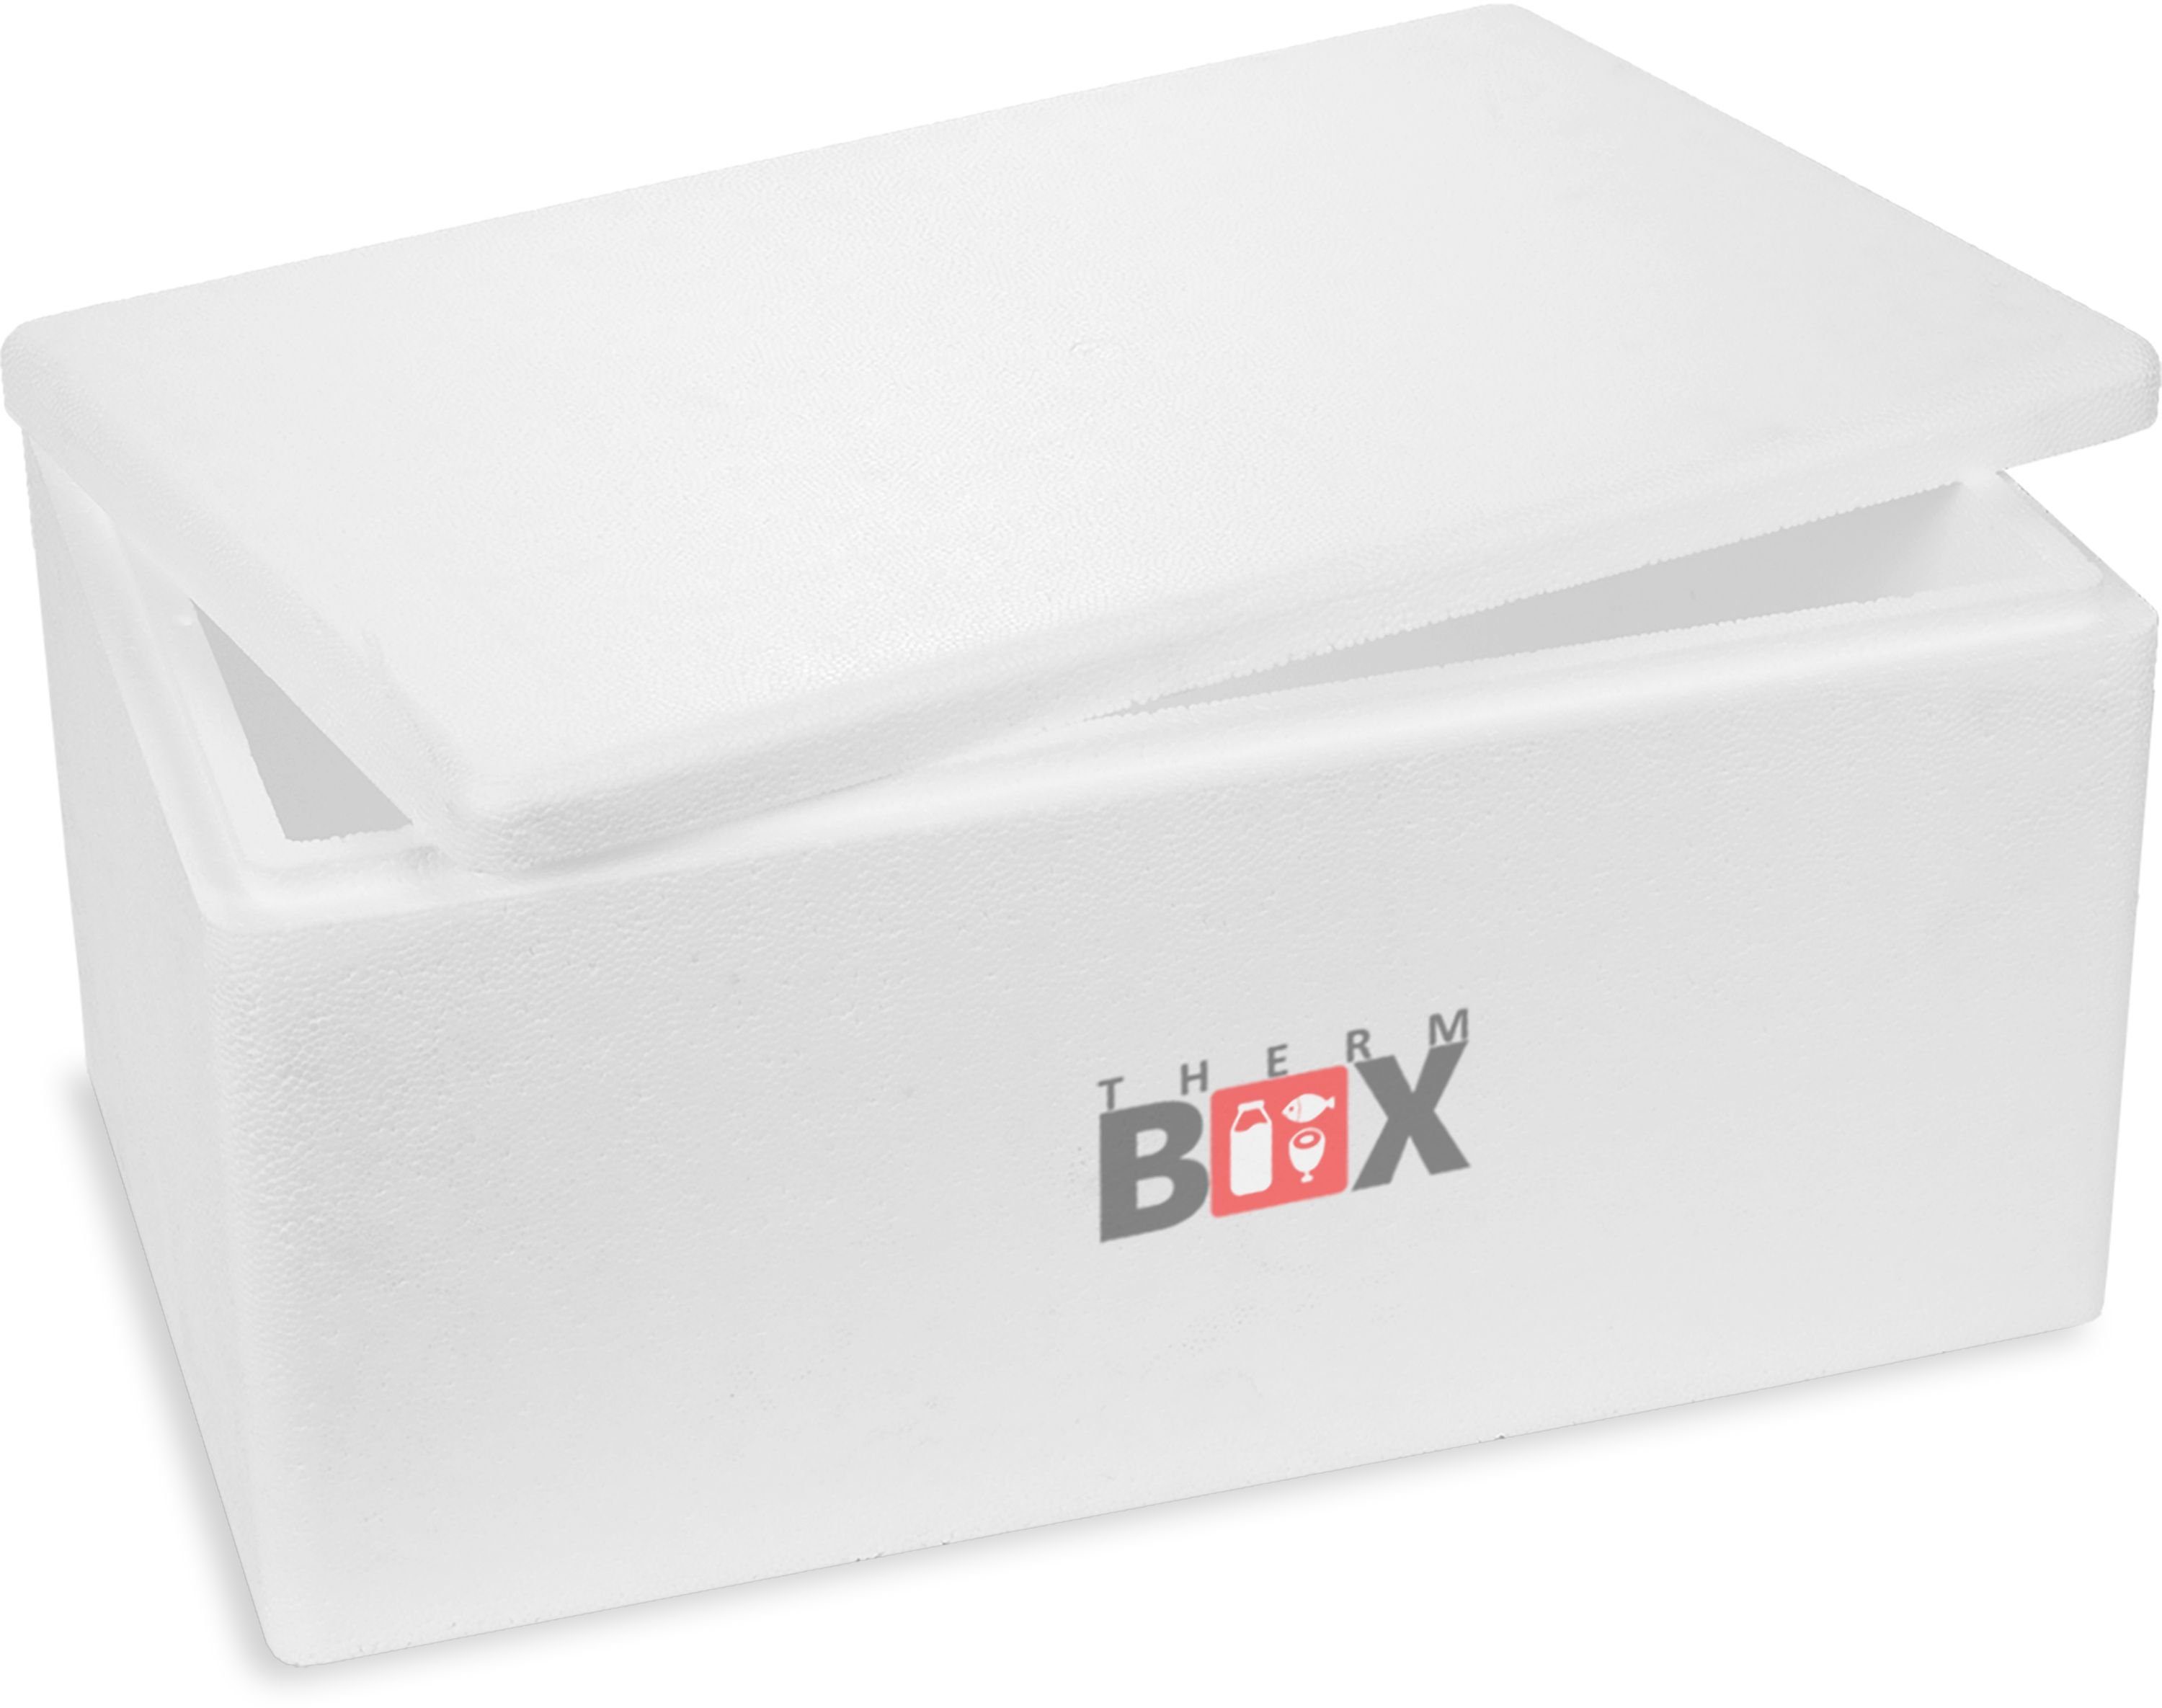 THERM-BOX Thermobehälter Styroporbox 28W Innen: 49x29,5x20cm 28,91 Liter Wiederverwendbar, Styropor-Verdichtet, (0-tlg., Box mit Deckel im Karton), Thermobox für Essen & Getränke Kühlbox Warmhaltebox